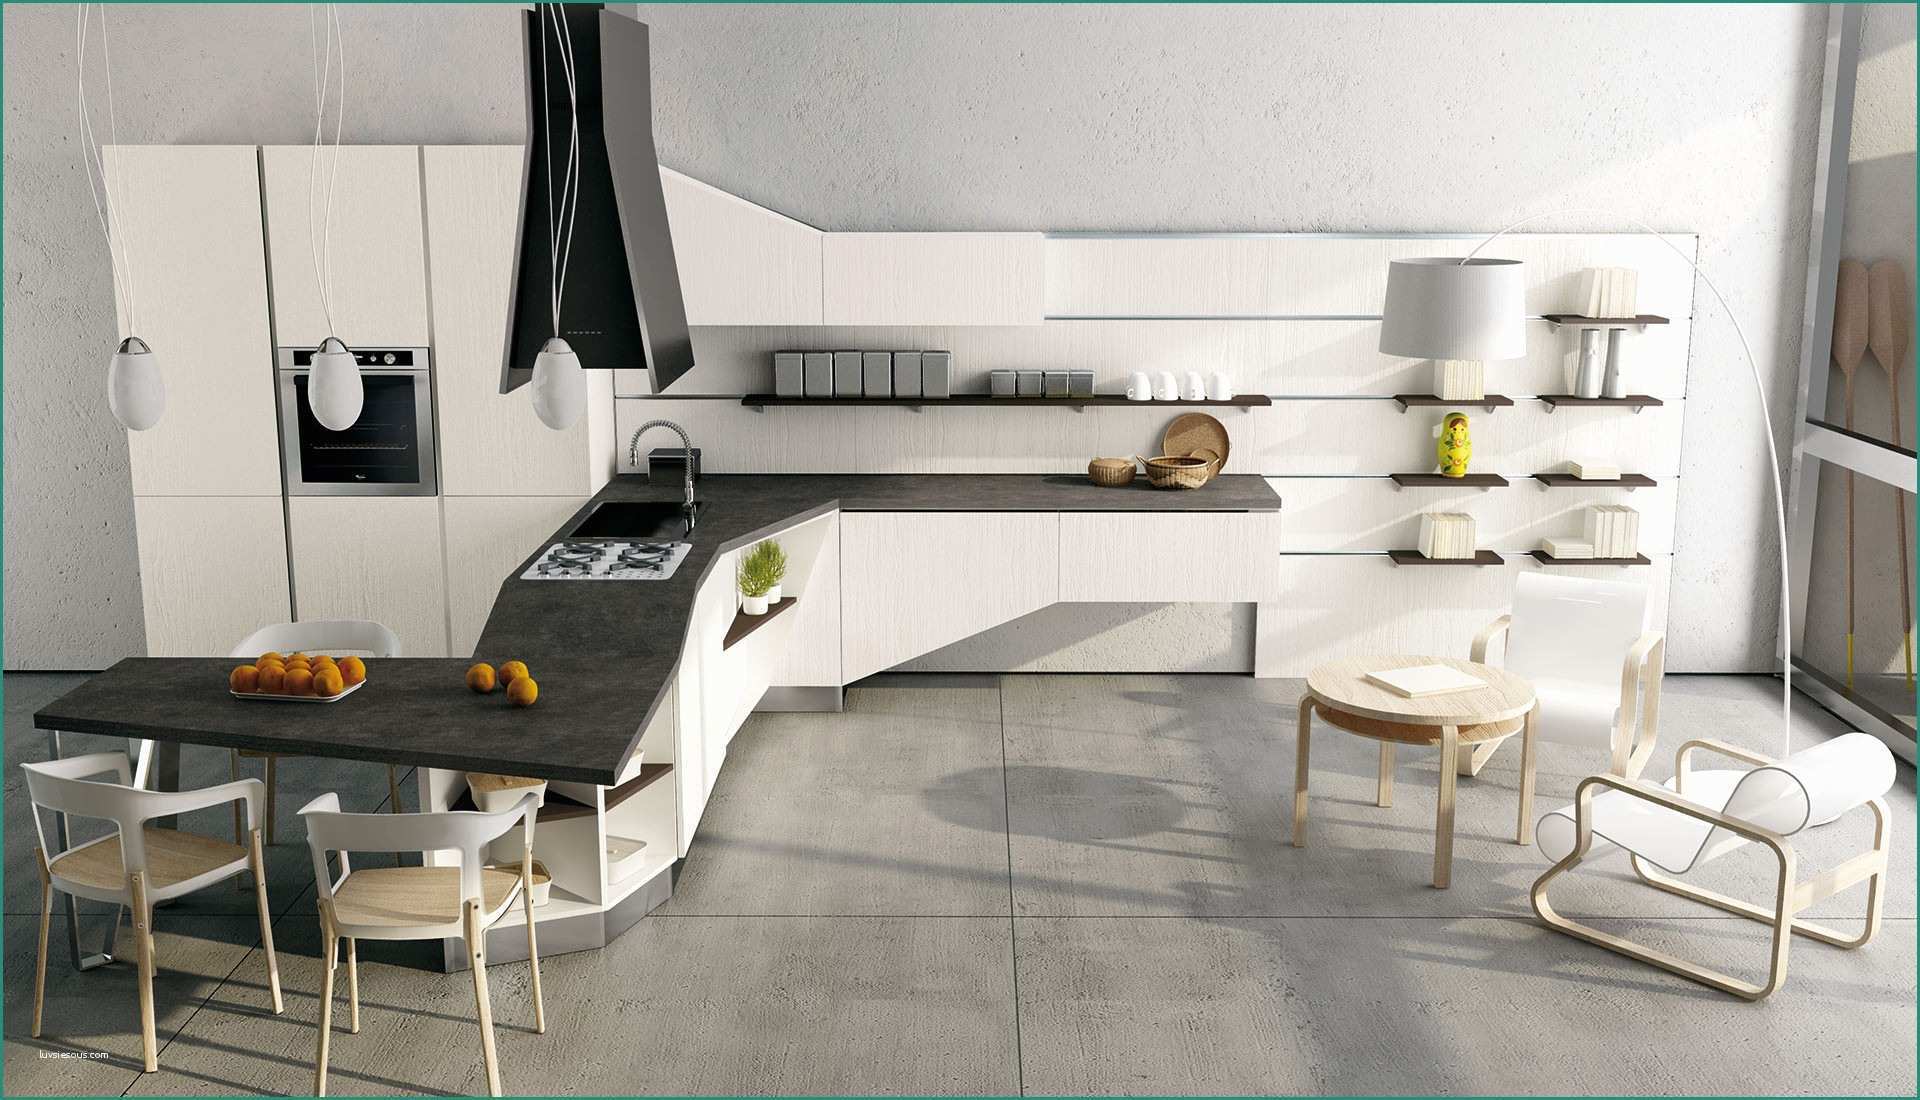 Cucine Rustiche Bianche E Colori Per Cucina Moderna Cucina Moderna Colore Bianco Parashizzi